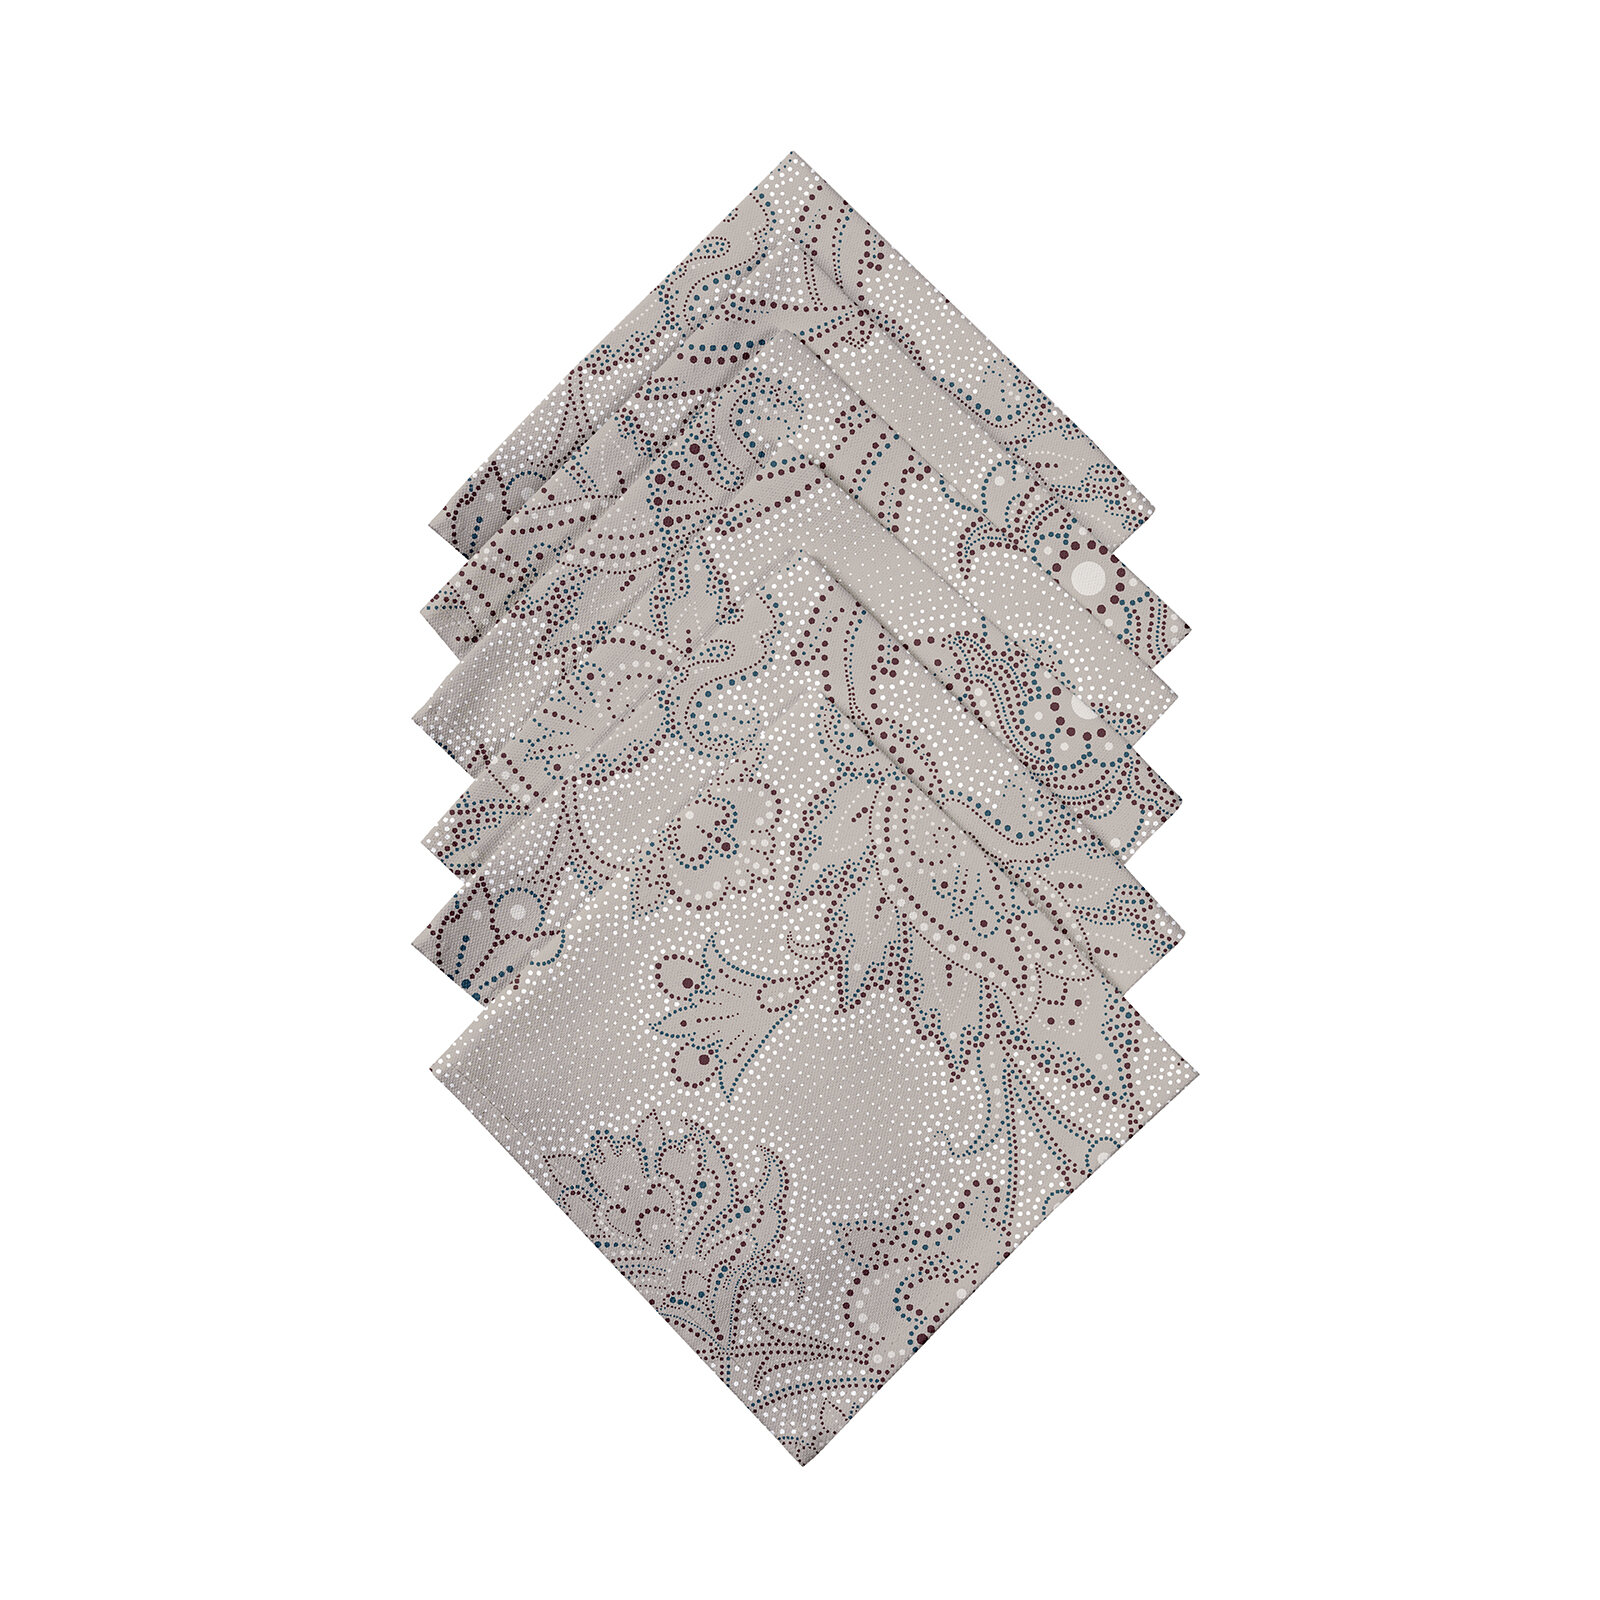 Комплект салфеток рогожка 32х32 (6 шт.) "Mia Cara" рис 30300-2 Ожерелье